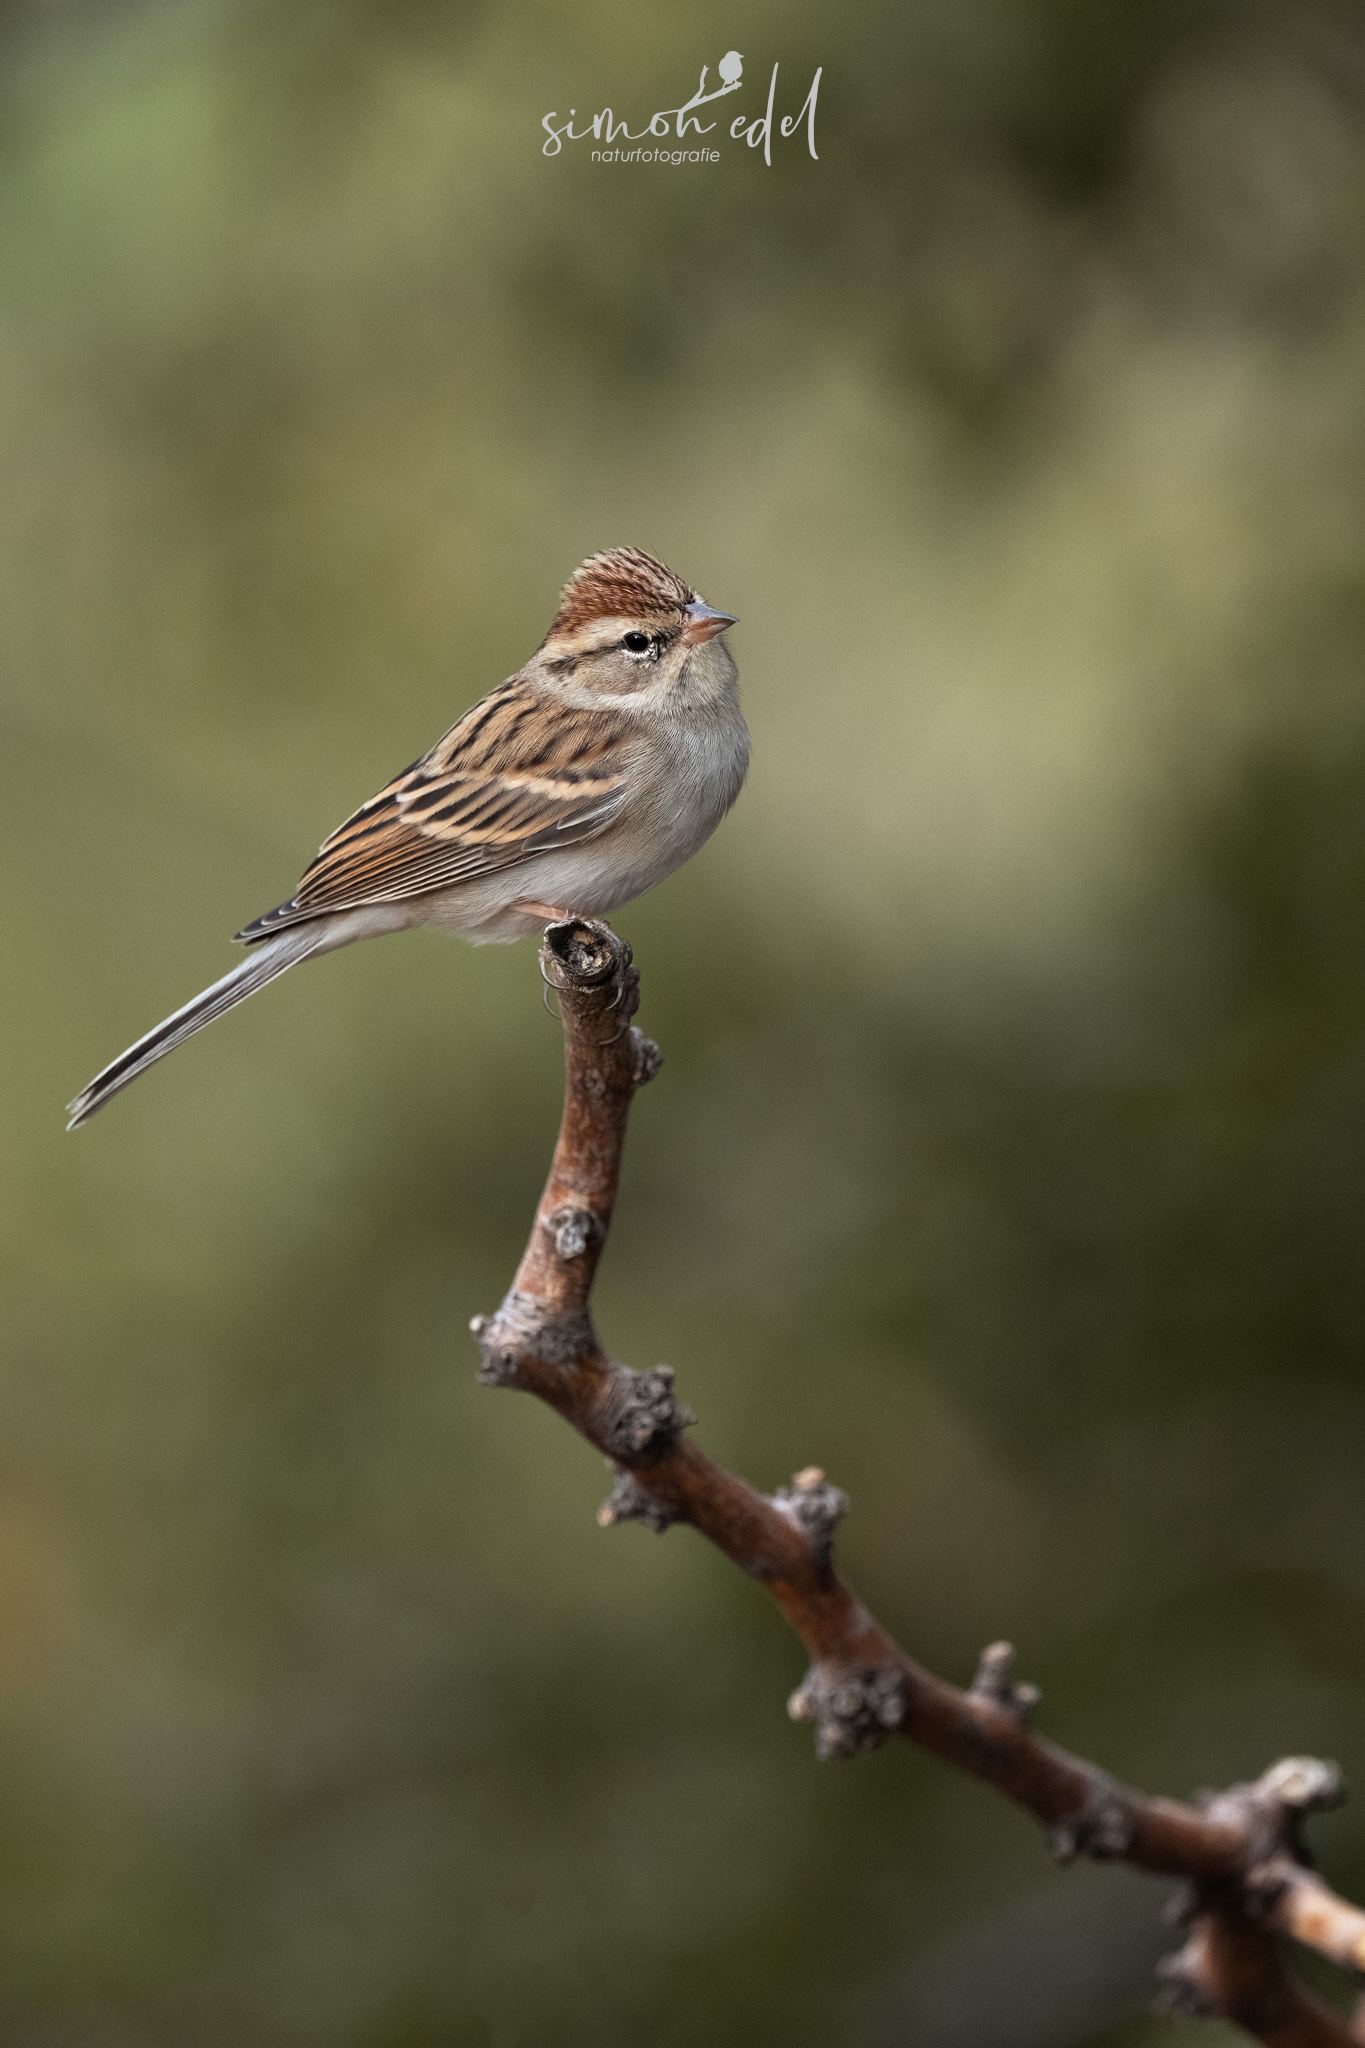 Schwirrammer (chipping sparrow)